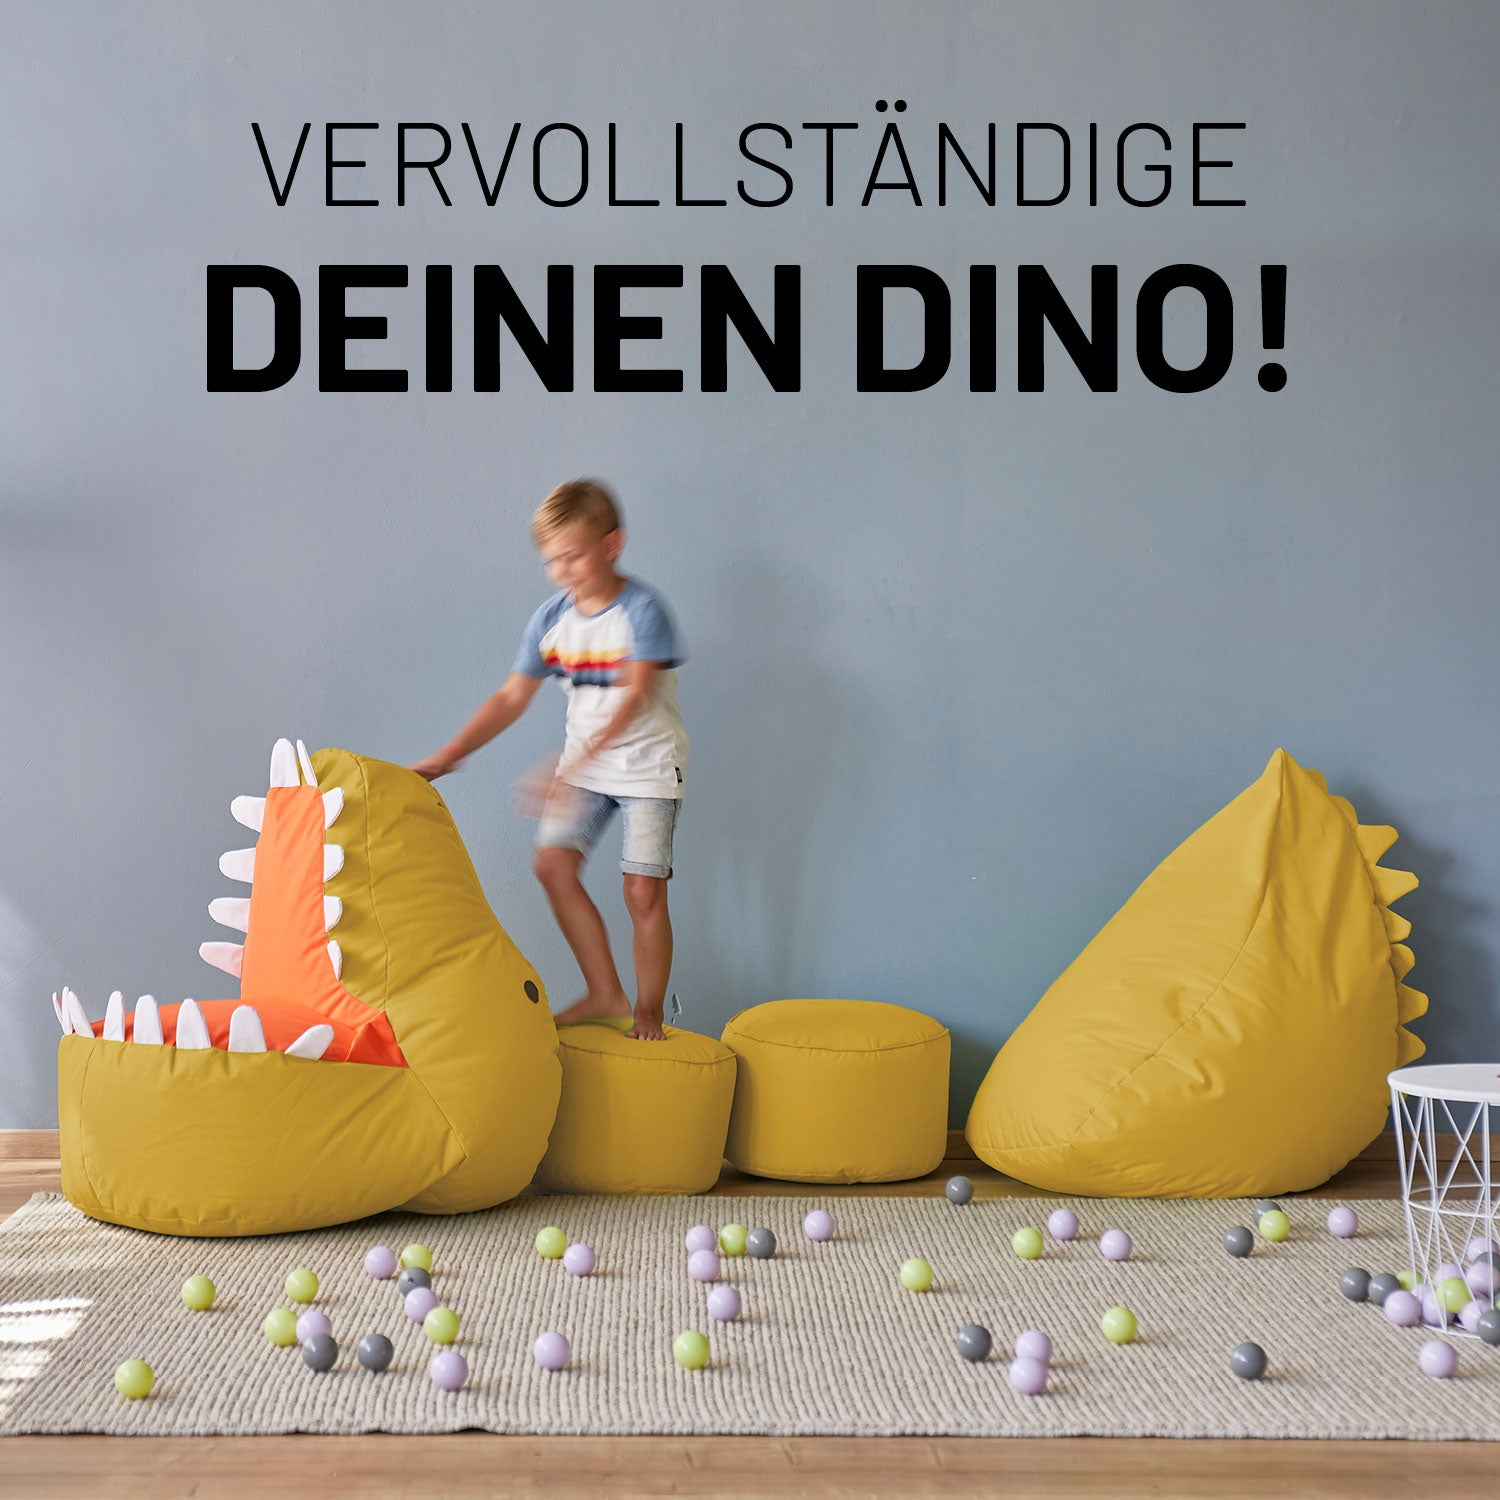 Kindersitzsack Animal Line Dino (270 L)  - indoor & outdoor - Senfgelb